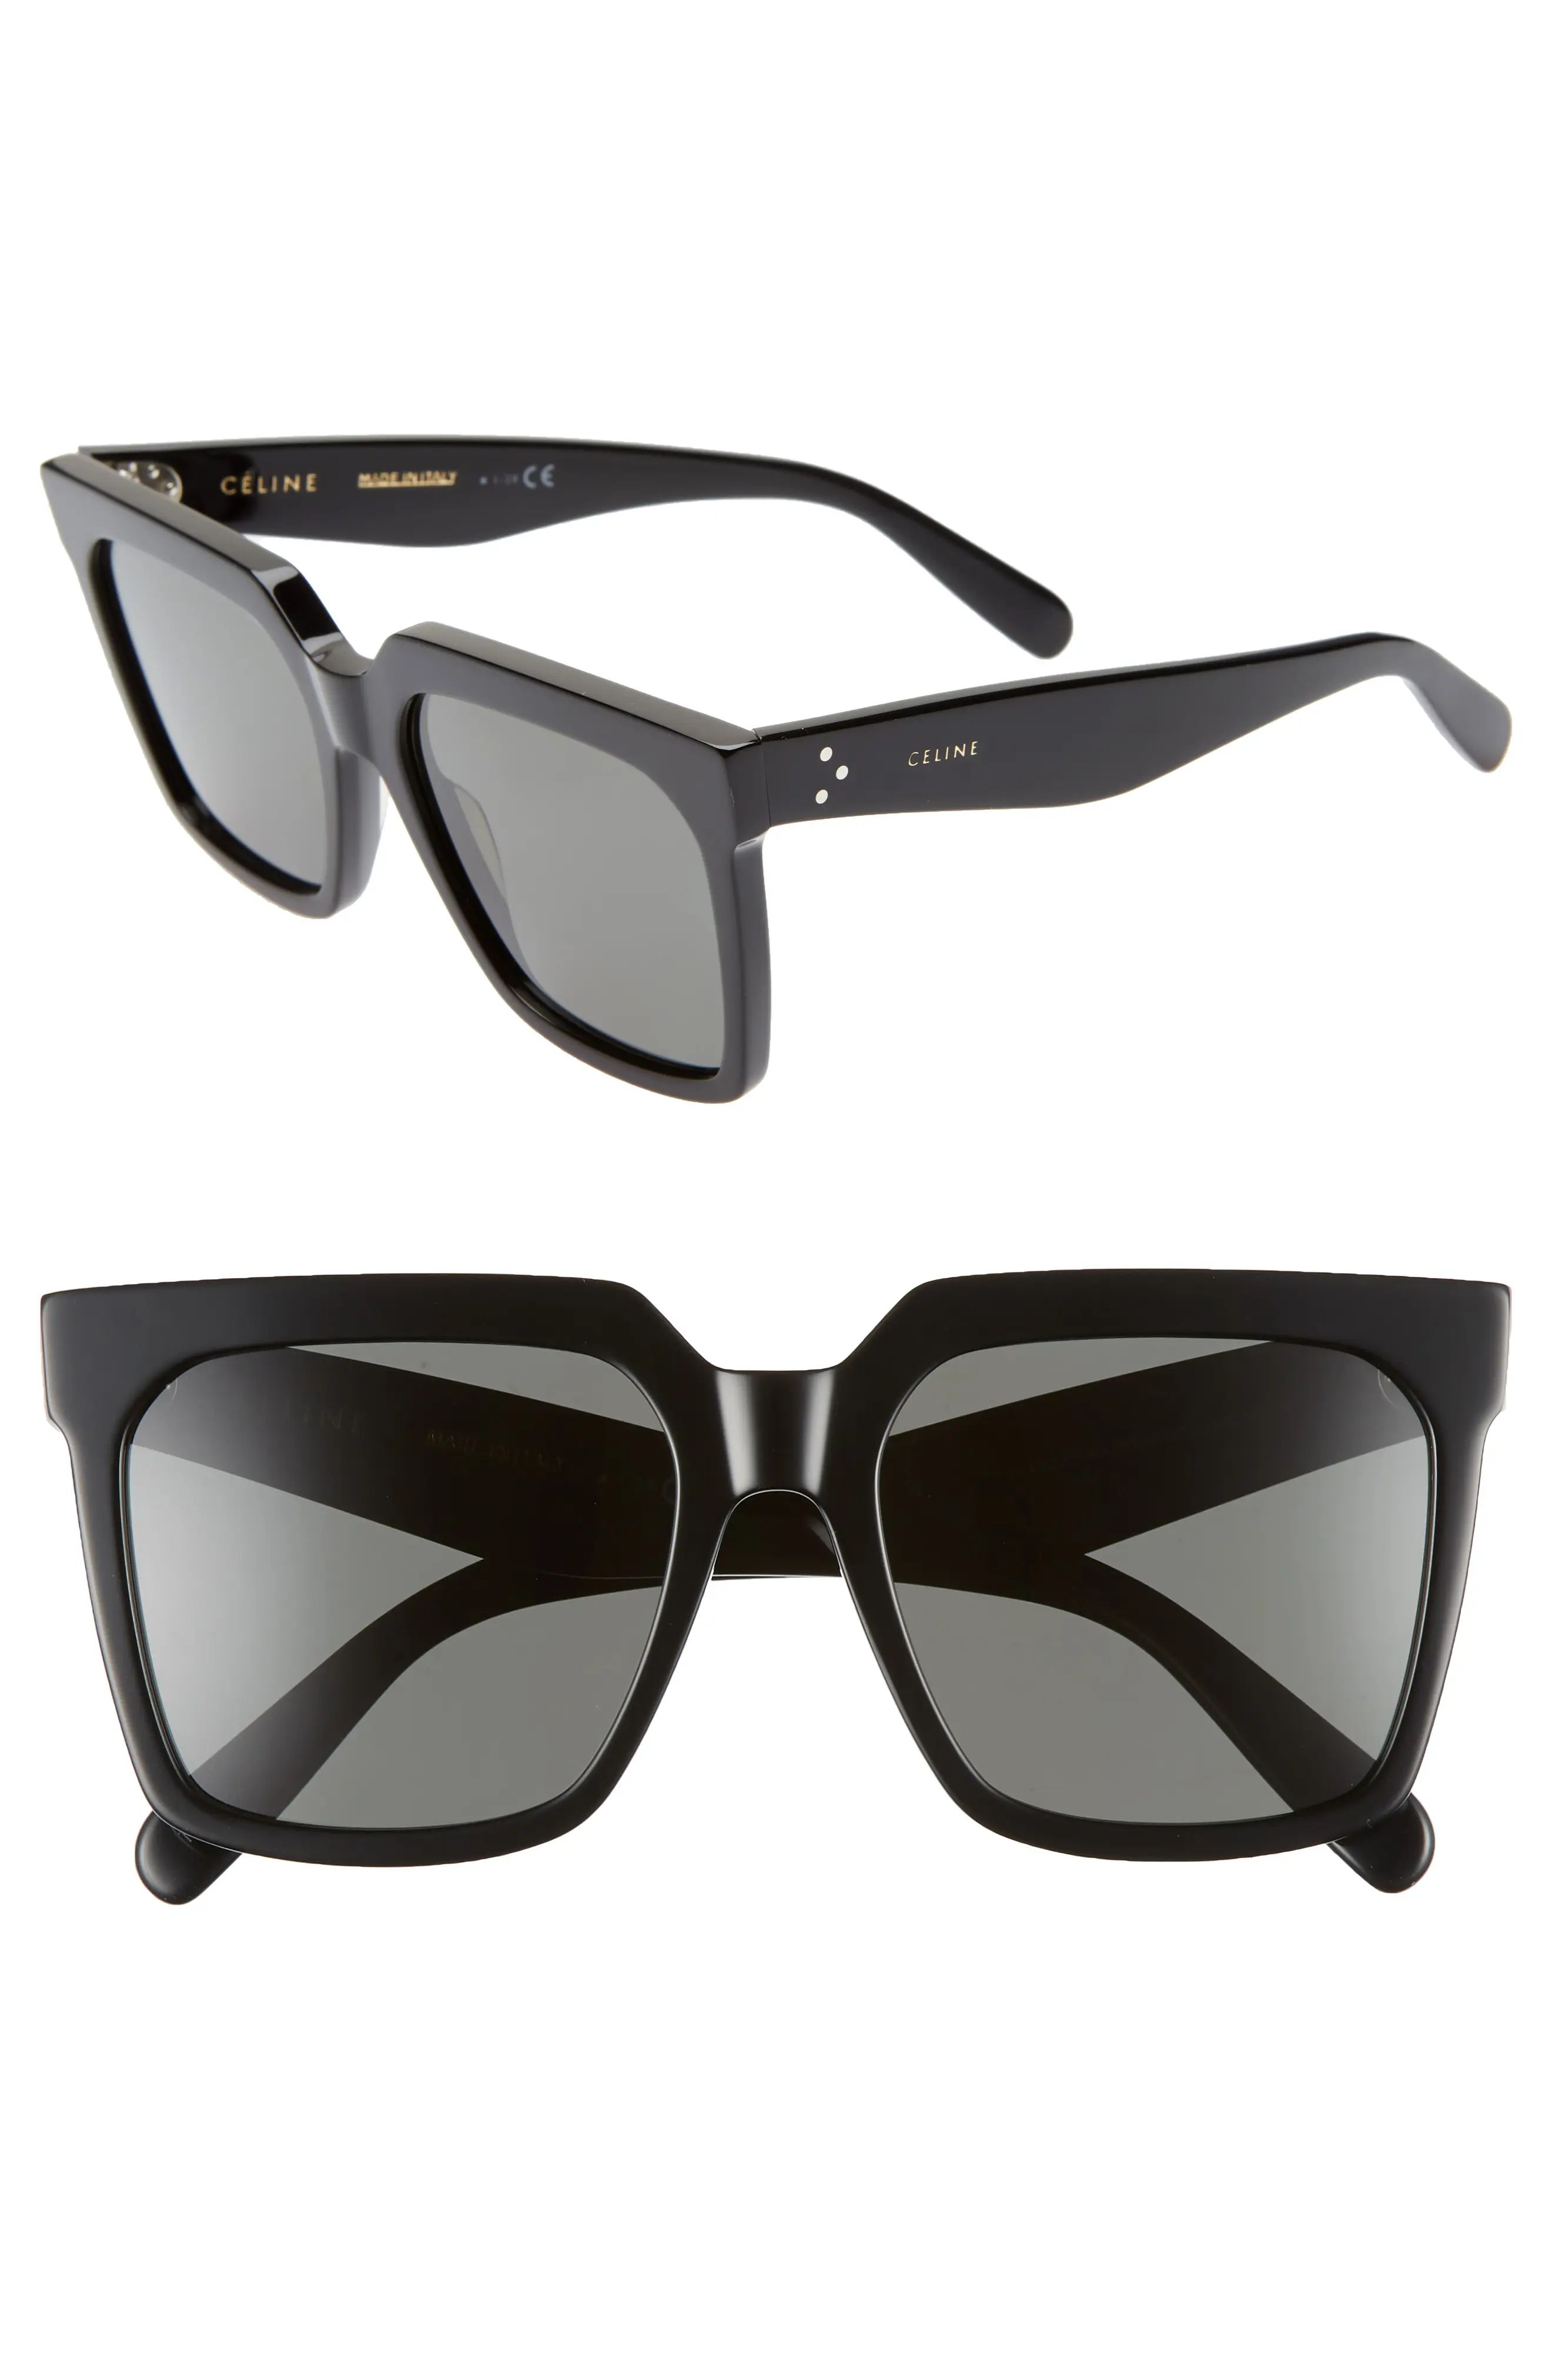 CELINE 55mm Polarized Square Sunglasses in Shiny Black/Smoke at Nordstrom | Nordstrom